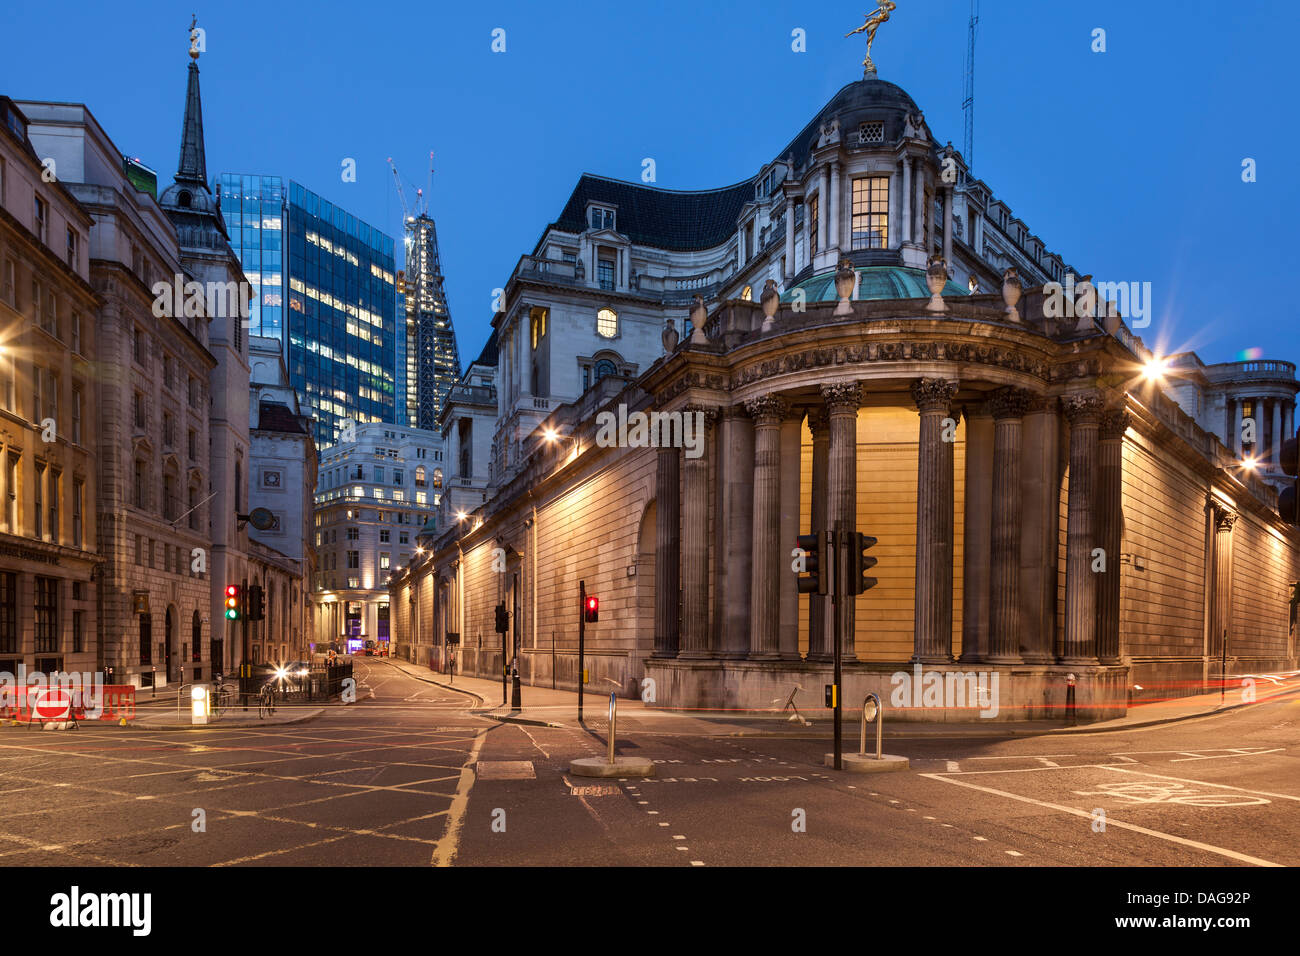 La Banca d'Inghilterra, dall'angolo del moorgate,Lothbury e Prince's Street,città di Londra, Inghilterra Foto Stock